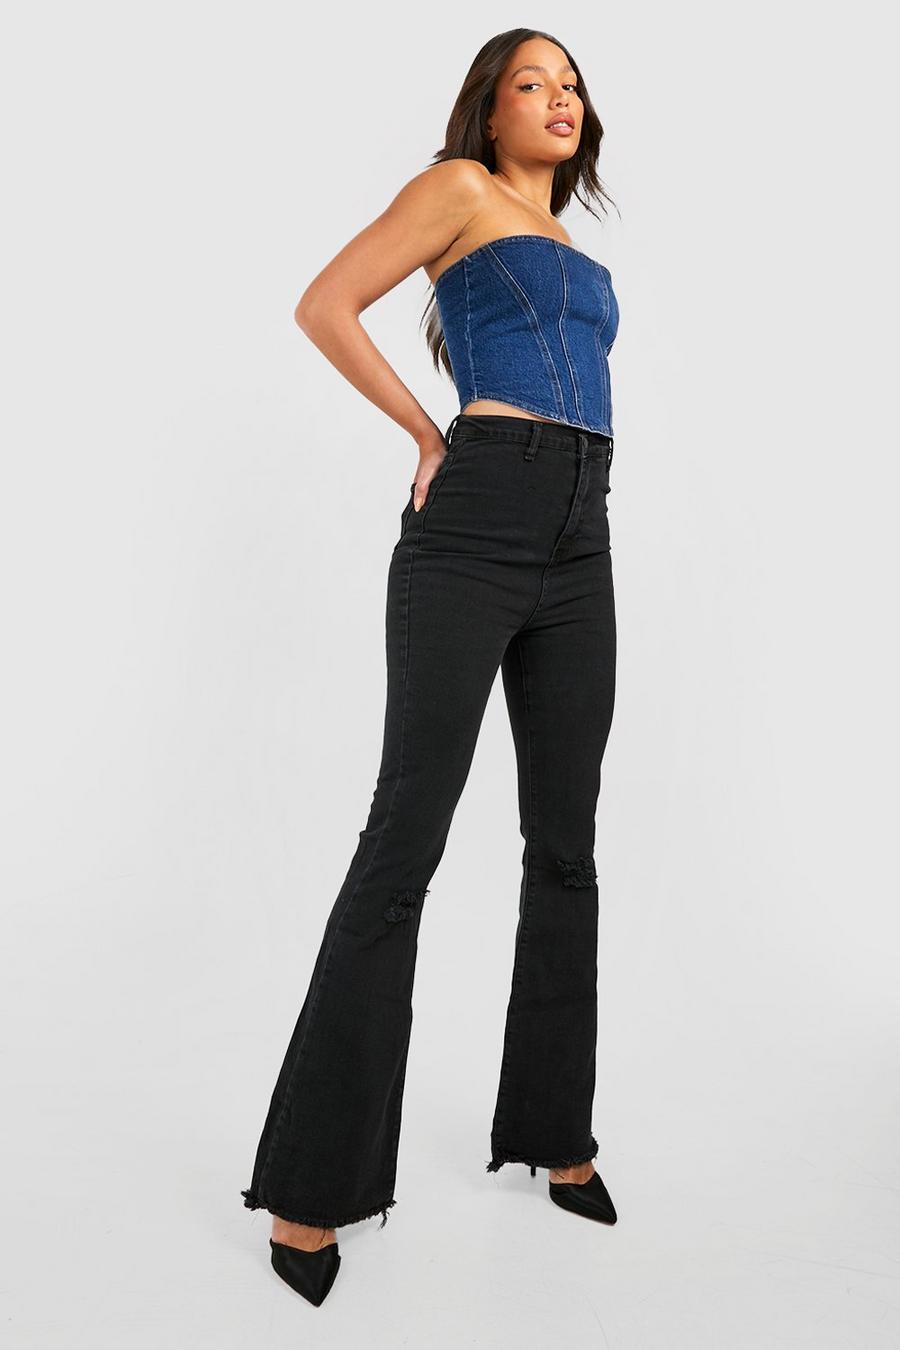 שחור מכנסי ג'ינס High Waisted מתרחבים מבד נמתח עם קרעים לנשים גבוהות